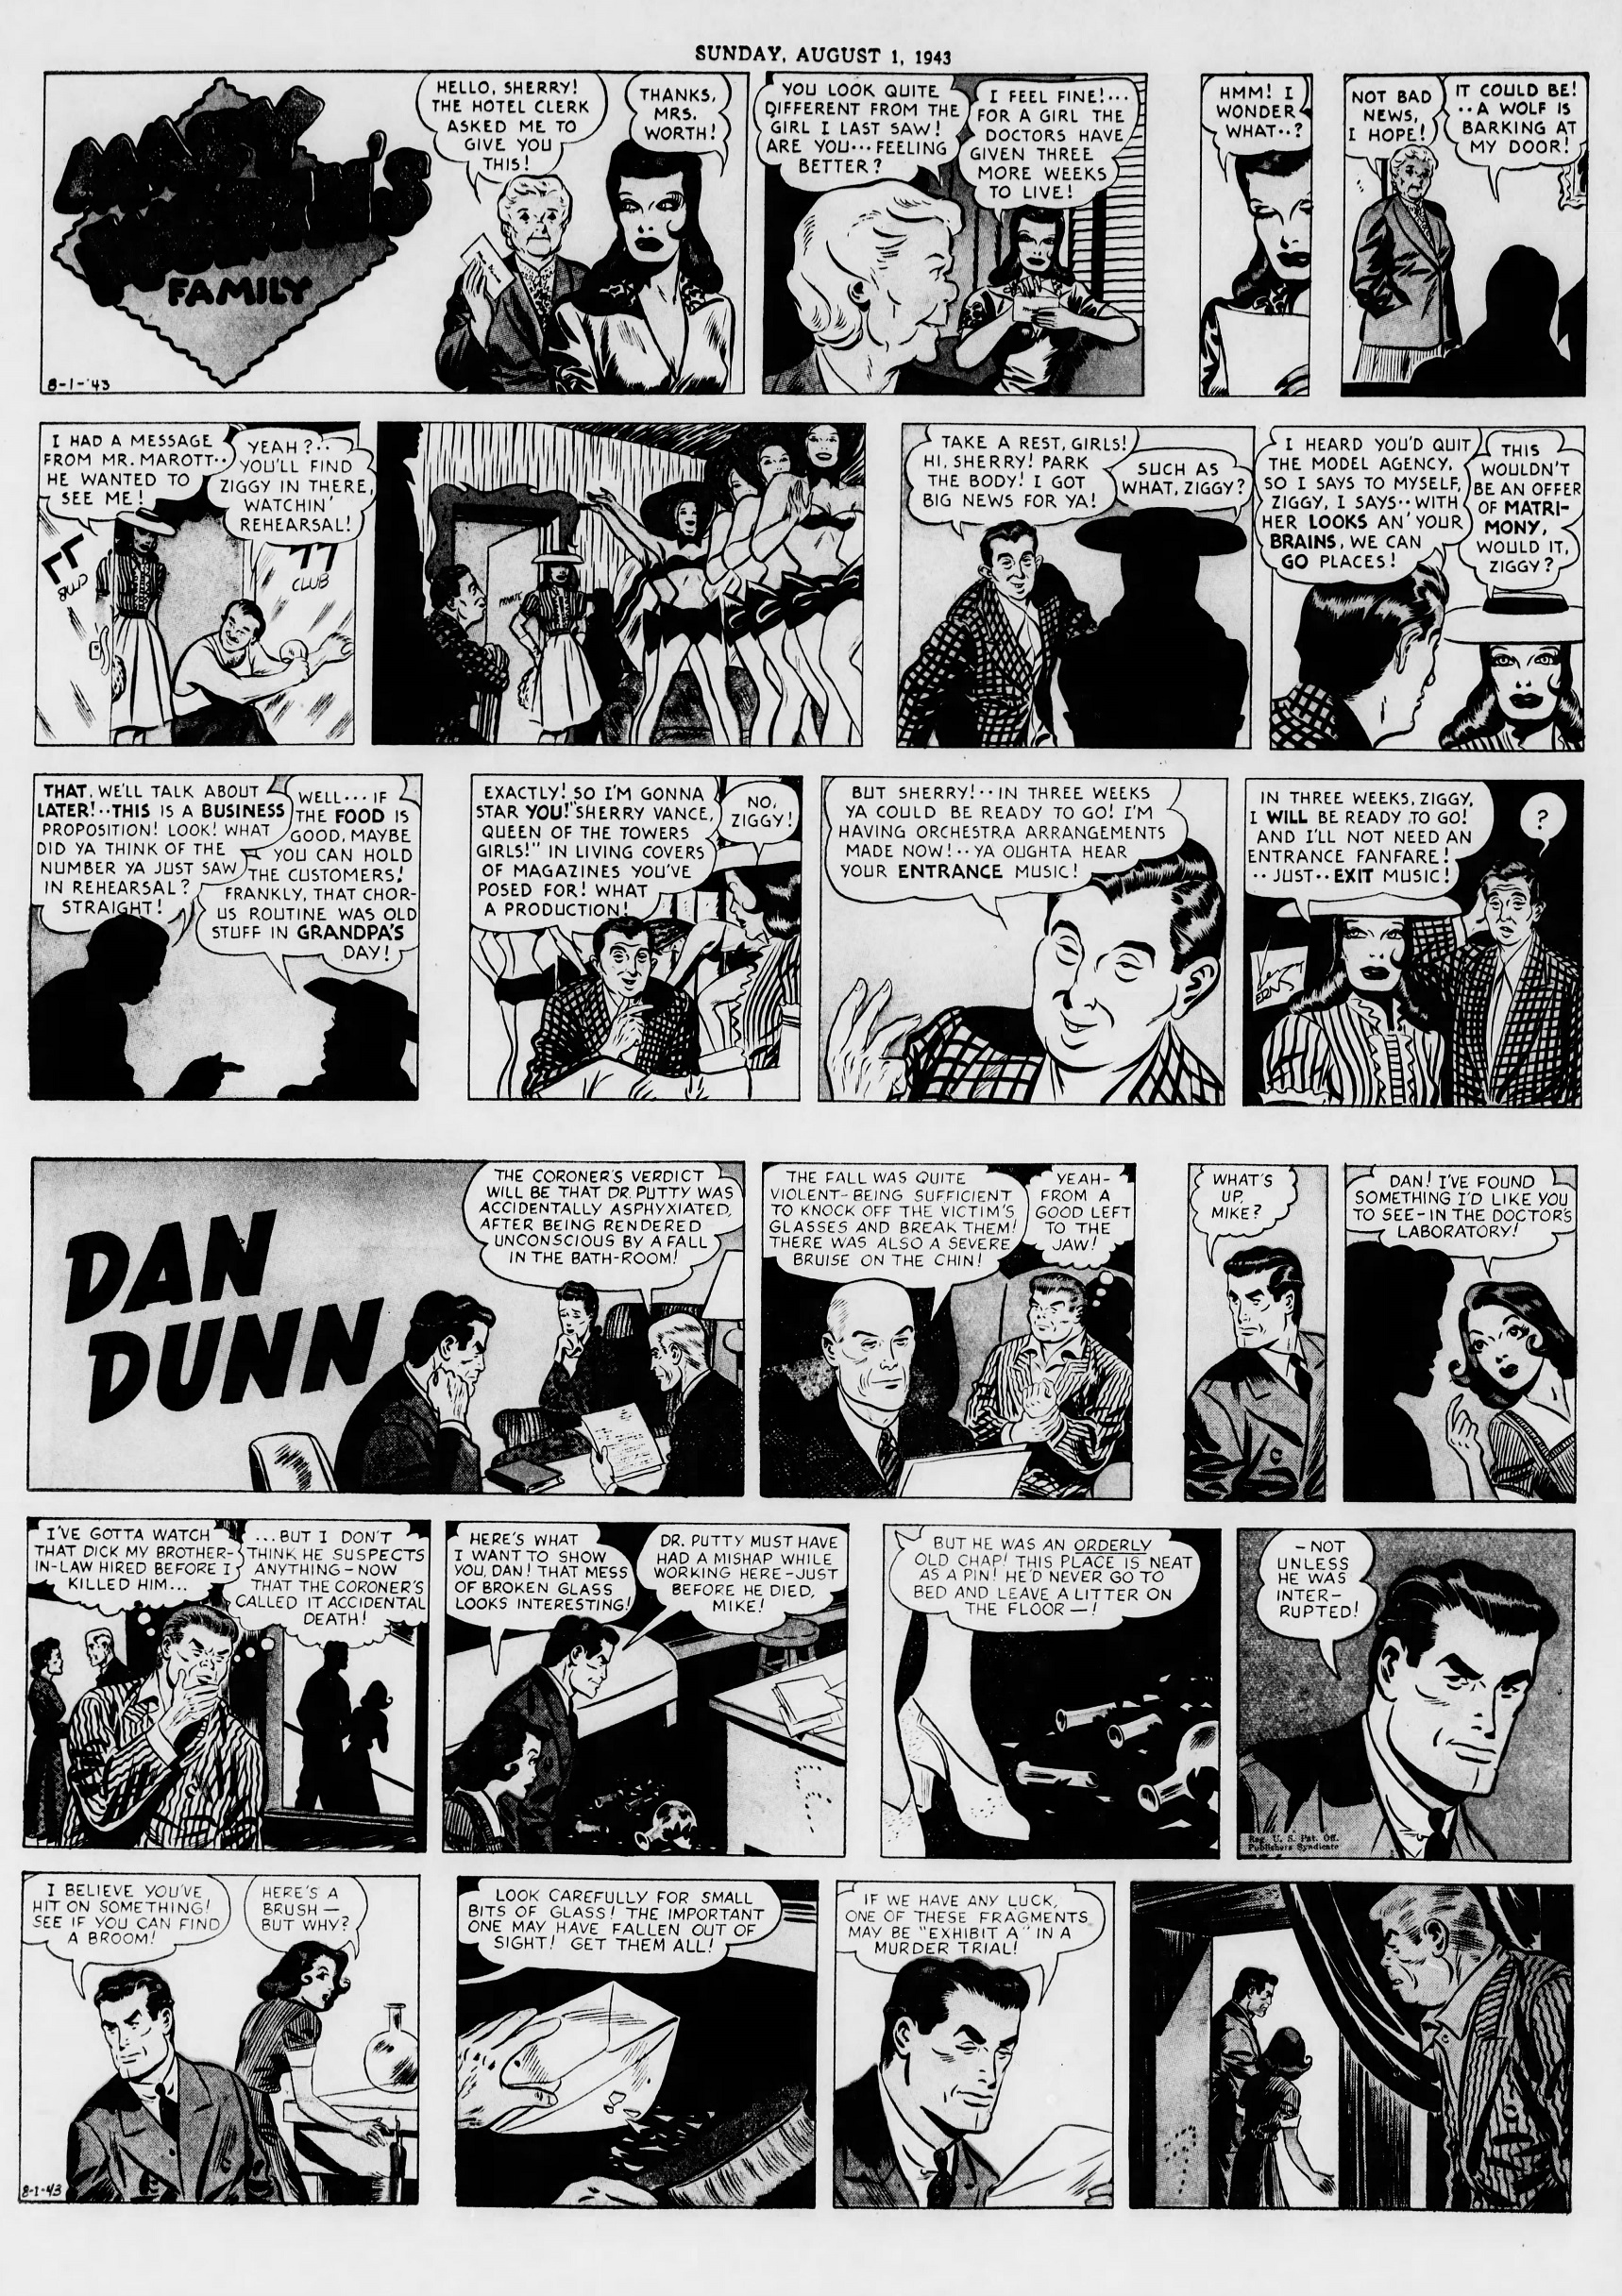 The_Brooklyn_Daily_Eagle_Sun__Aug_1__1943_(9).jpg